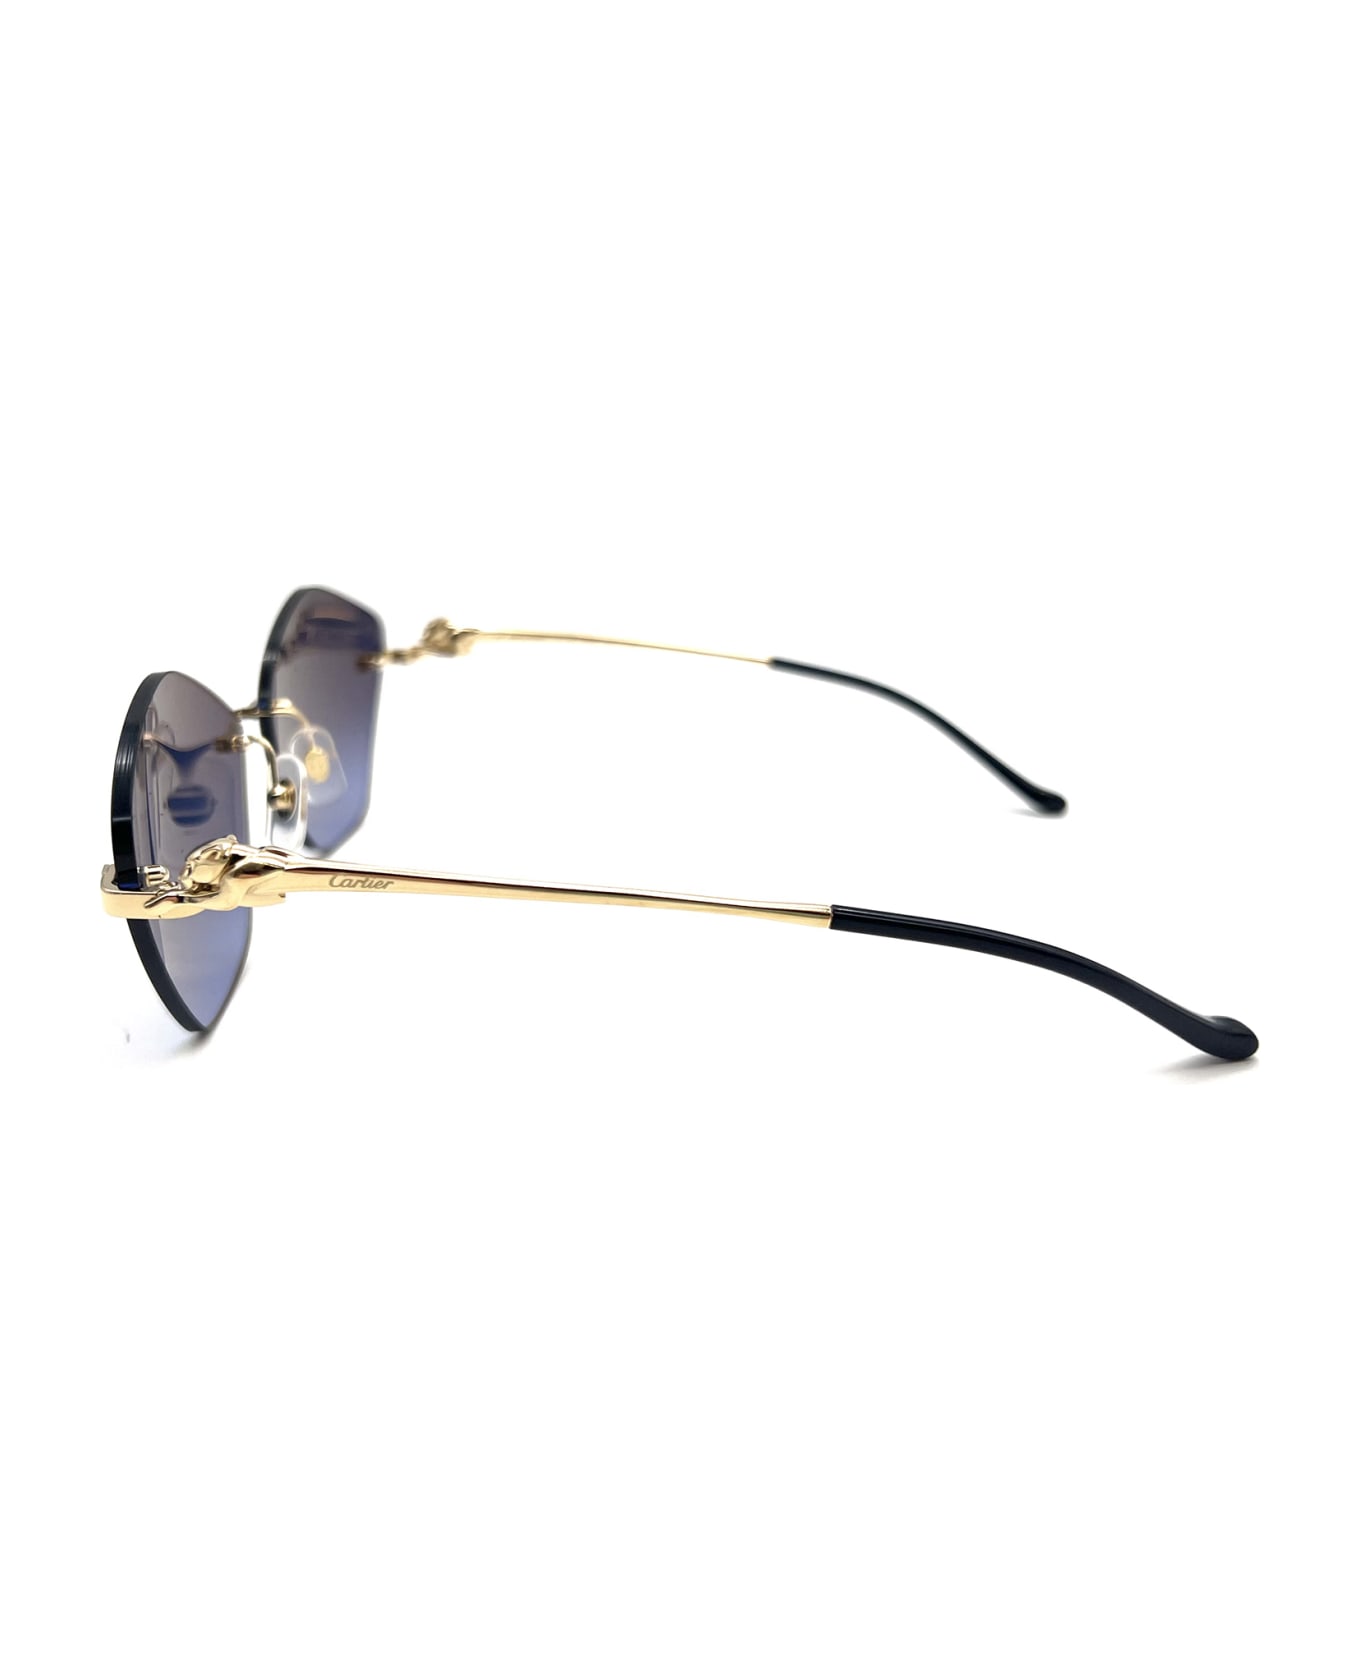 Cartier Eyewear Ct0429s Sunglasses - 004 GOLD GOLD BLUE